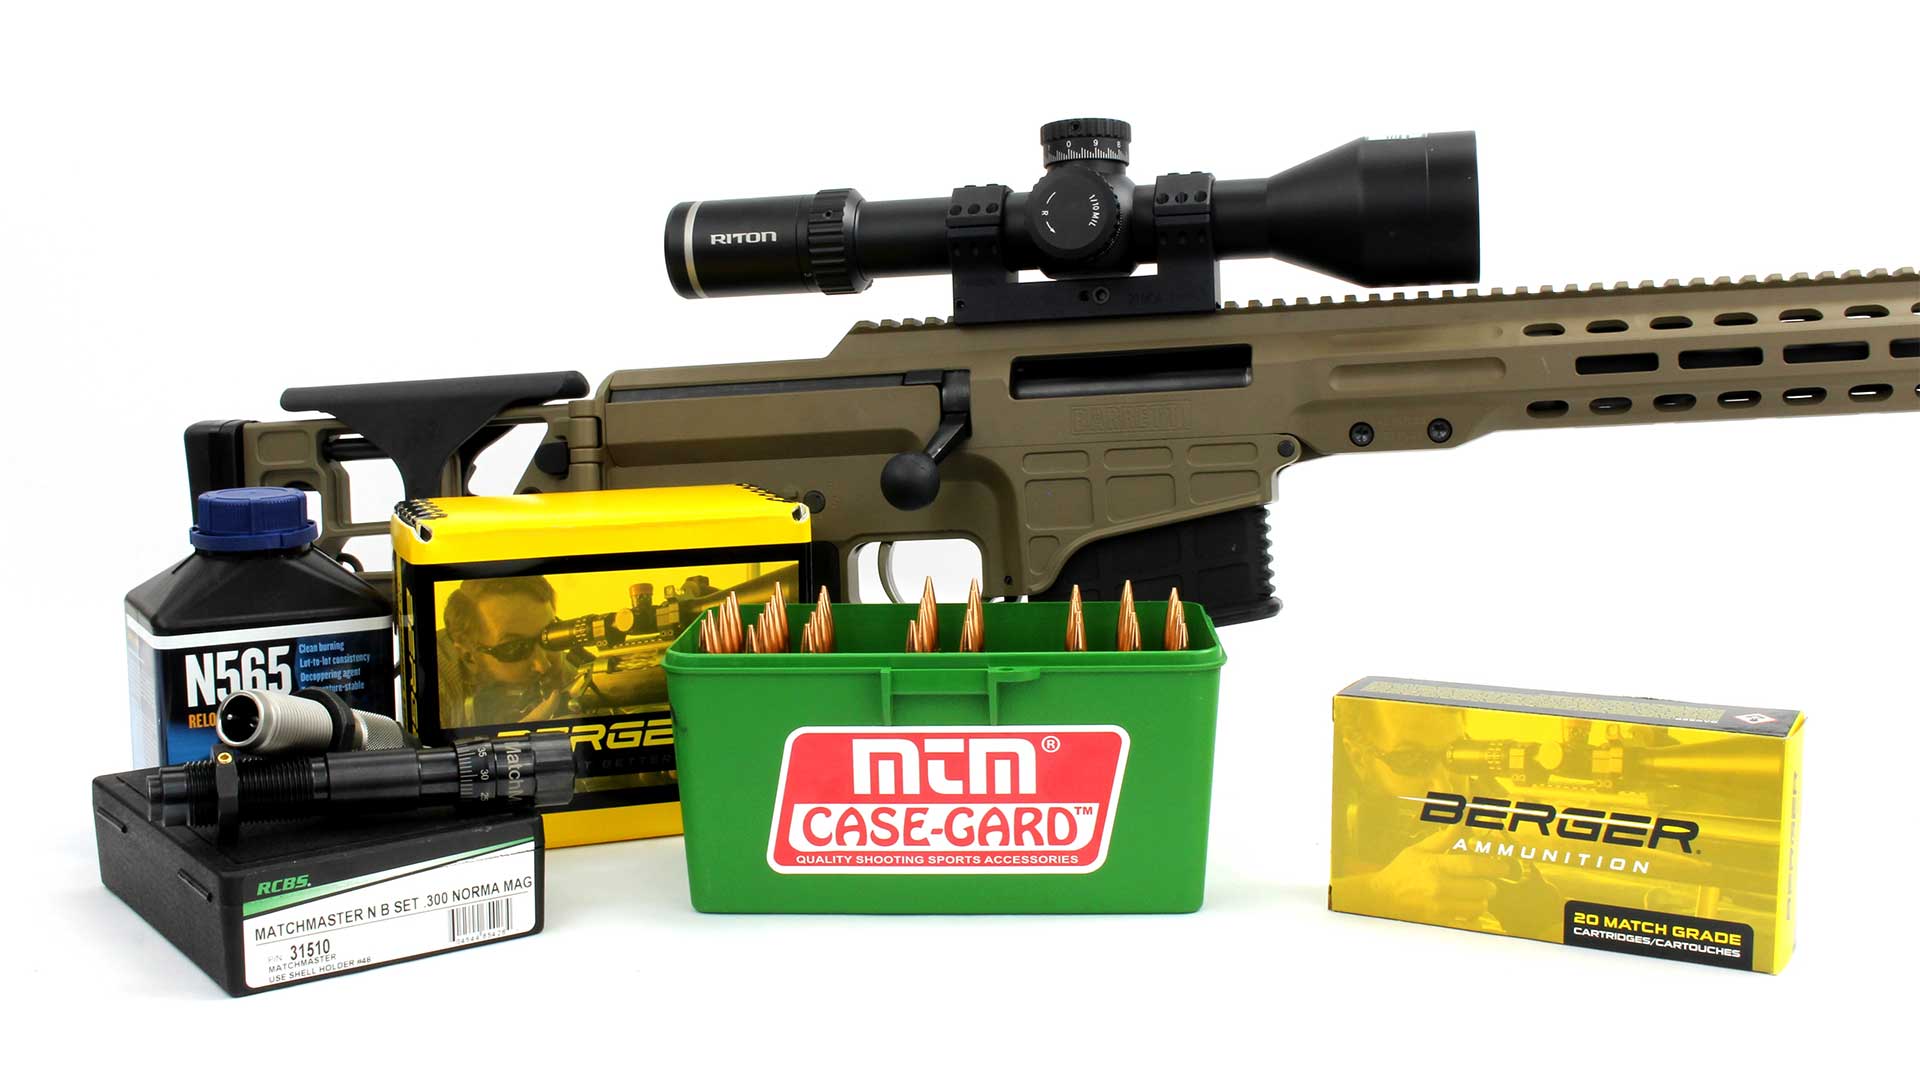 Range brass – any good for reloading? – The Gun Rack